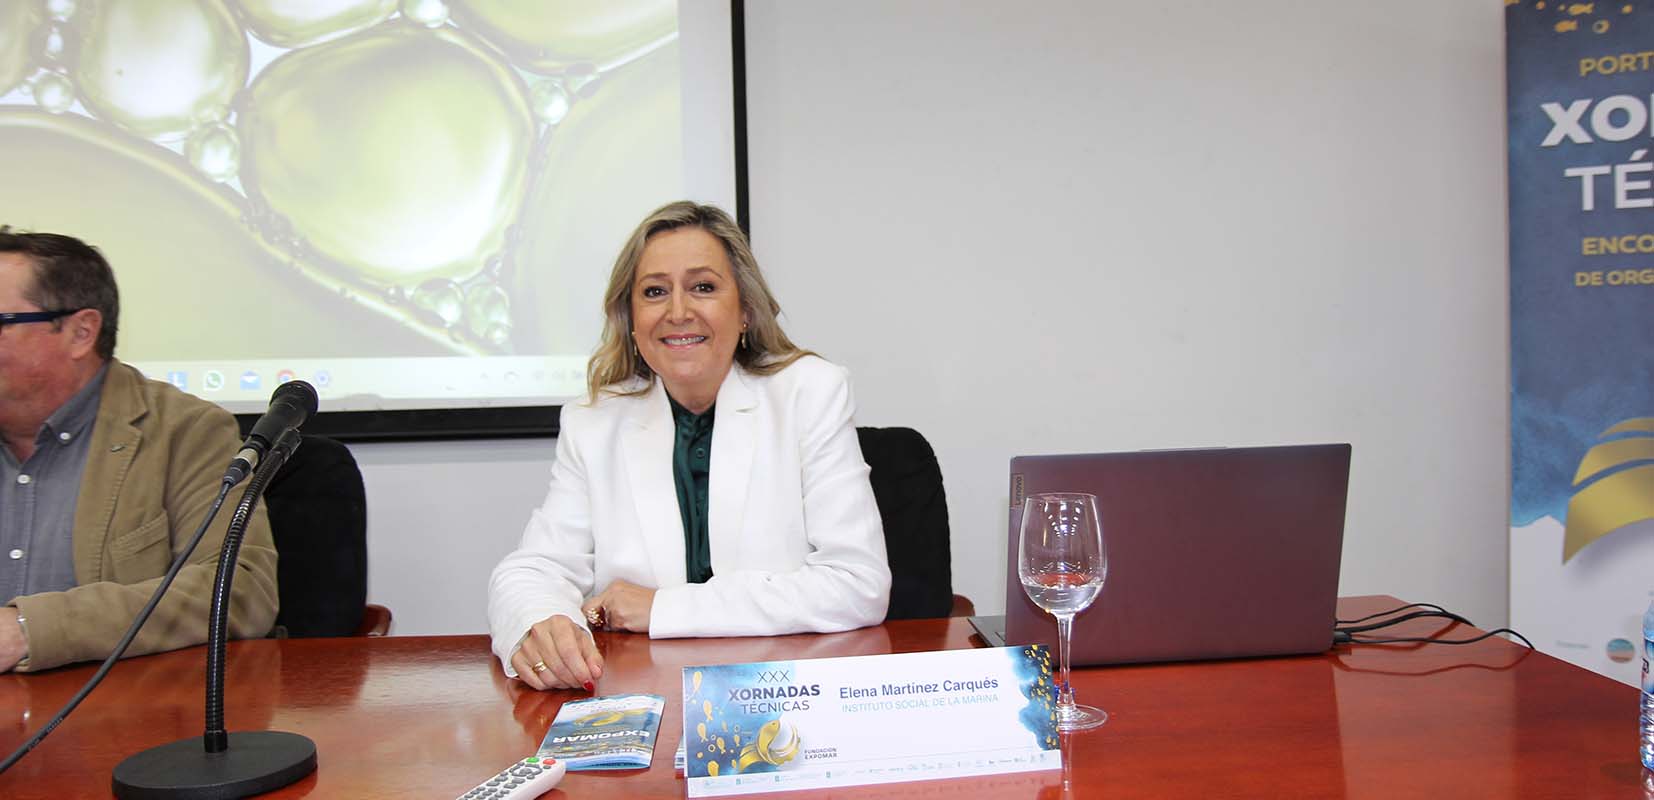 La directora del ISM Elena Martínez Carqués participó en las jornadas técnicas